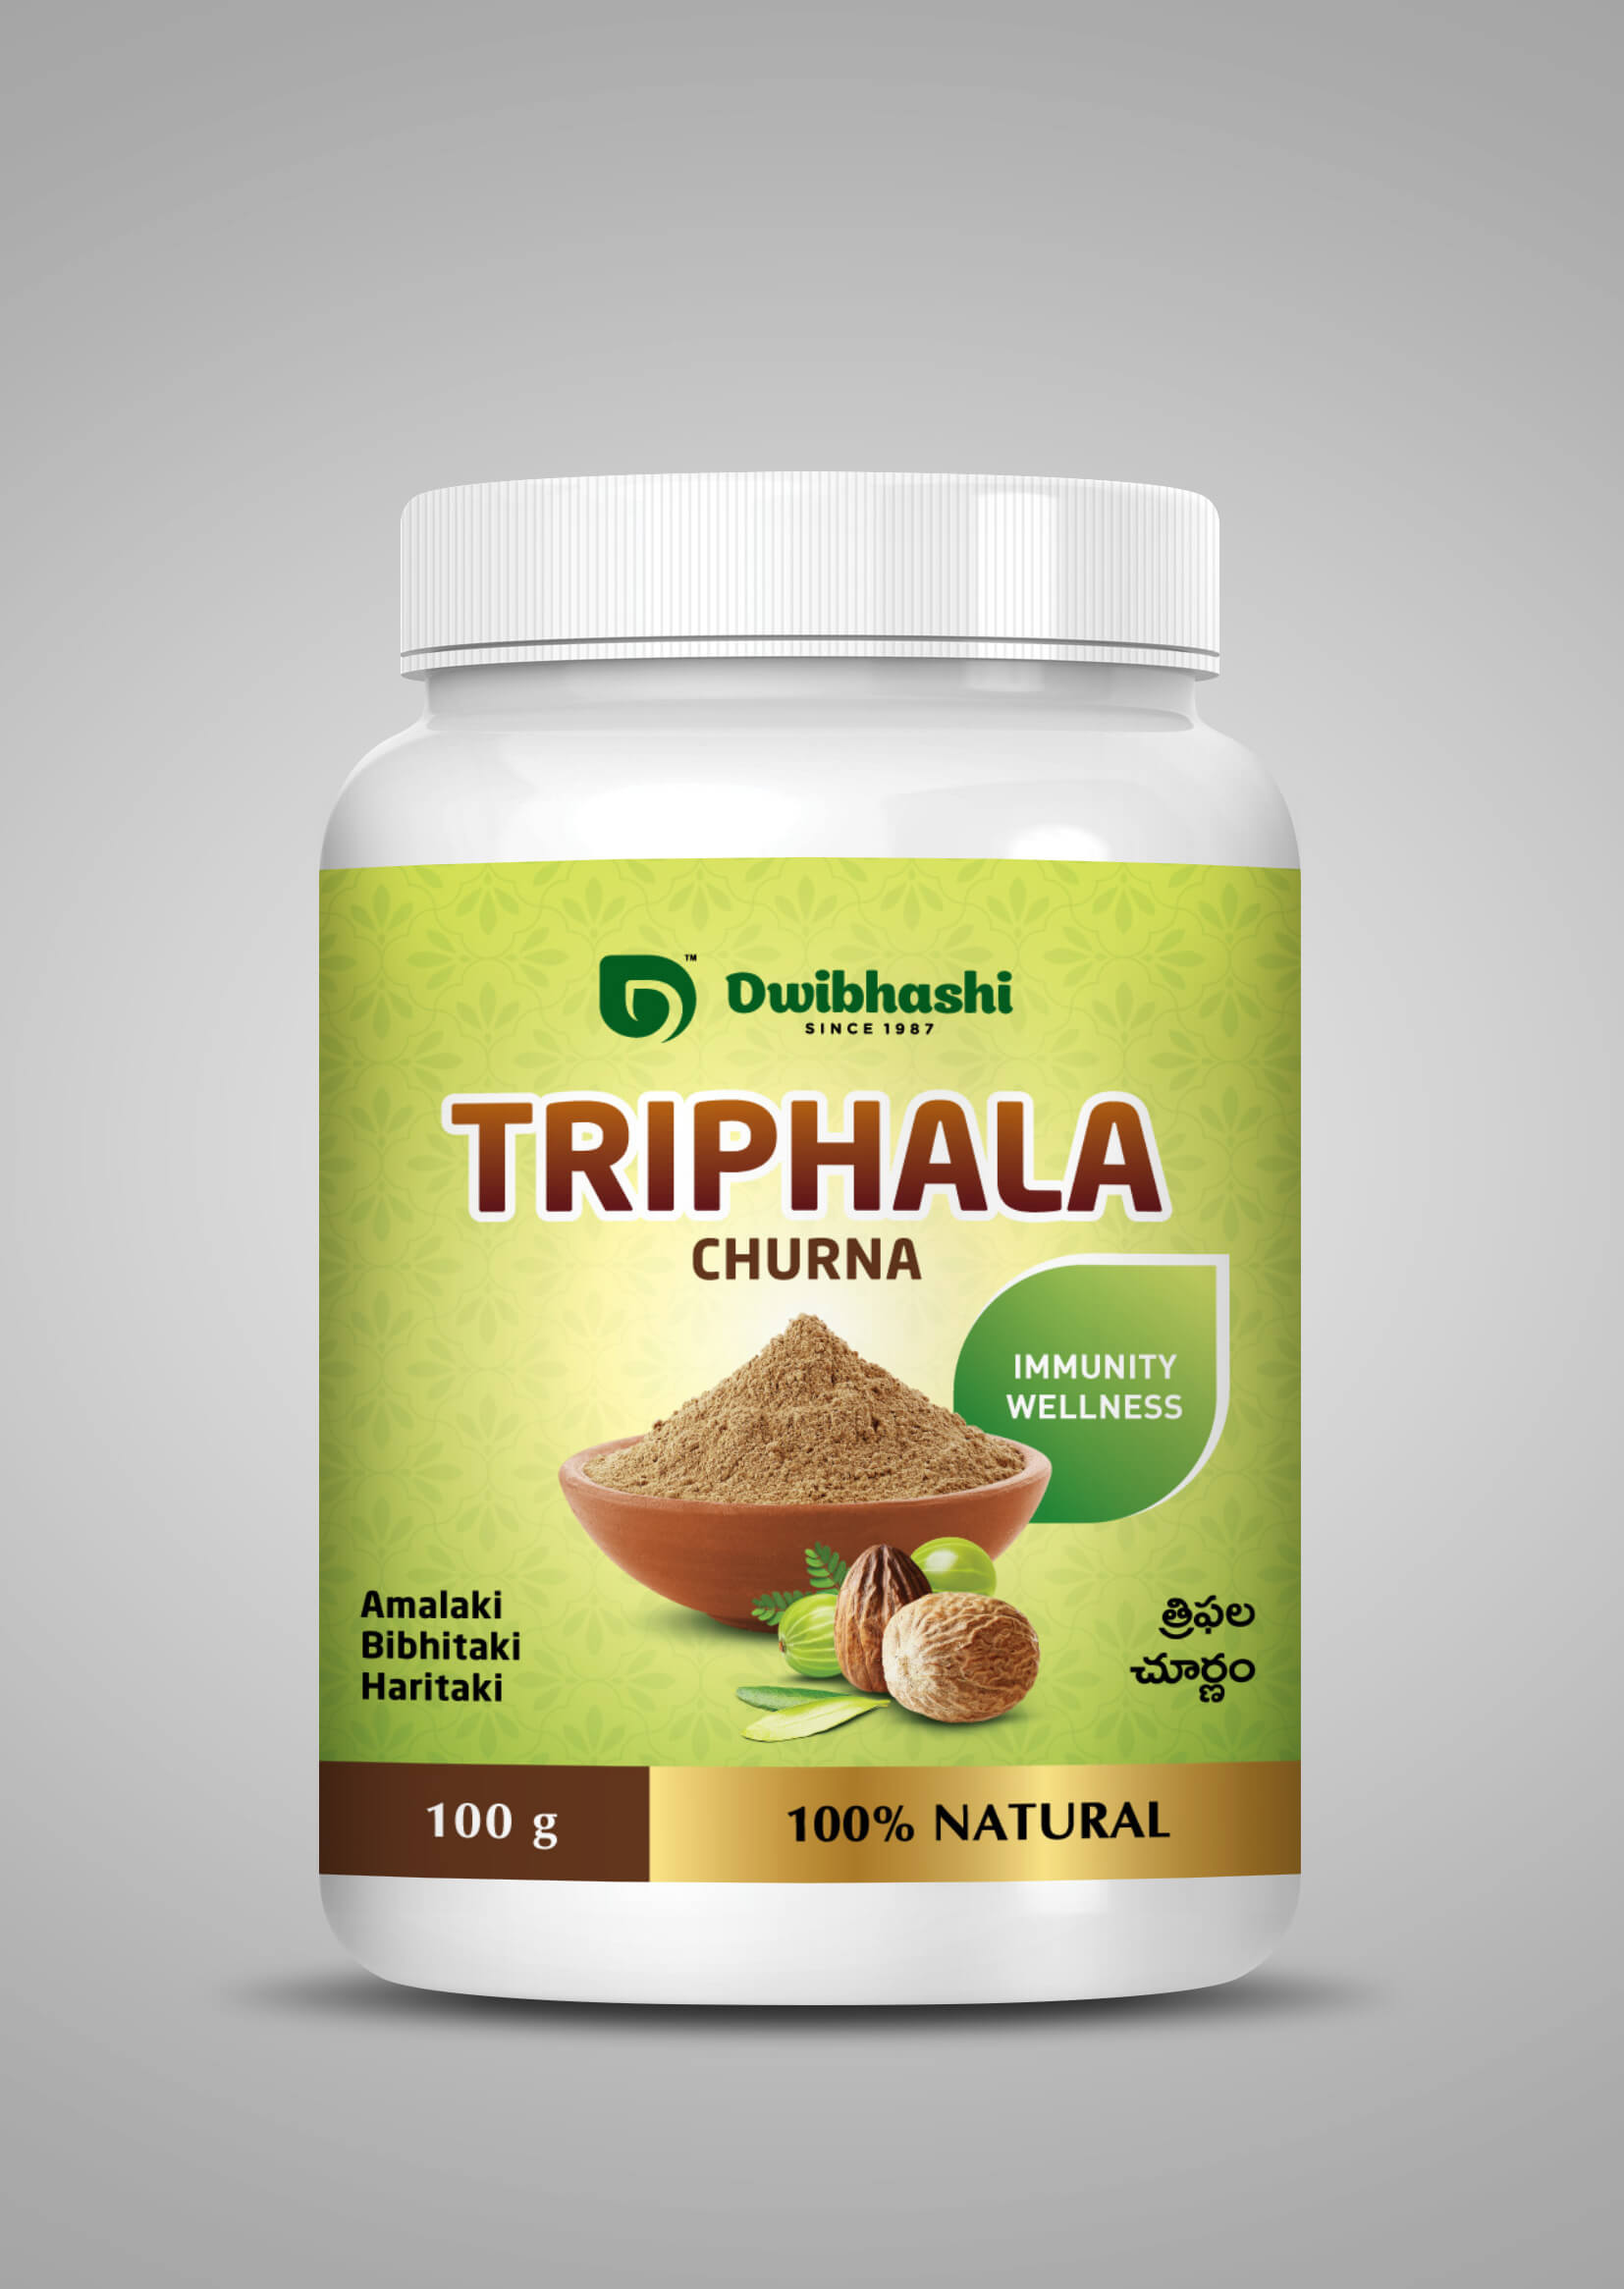 Buy Triphala Churna Online